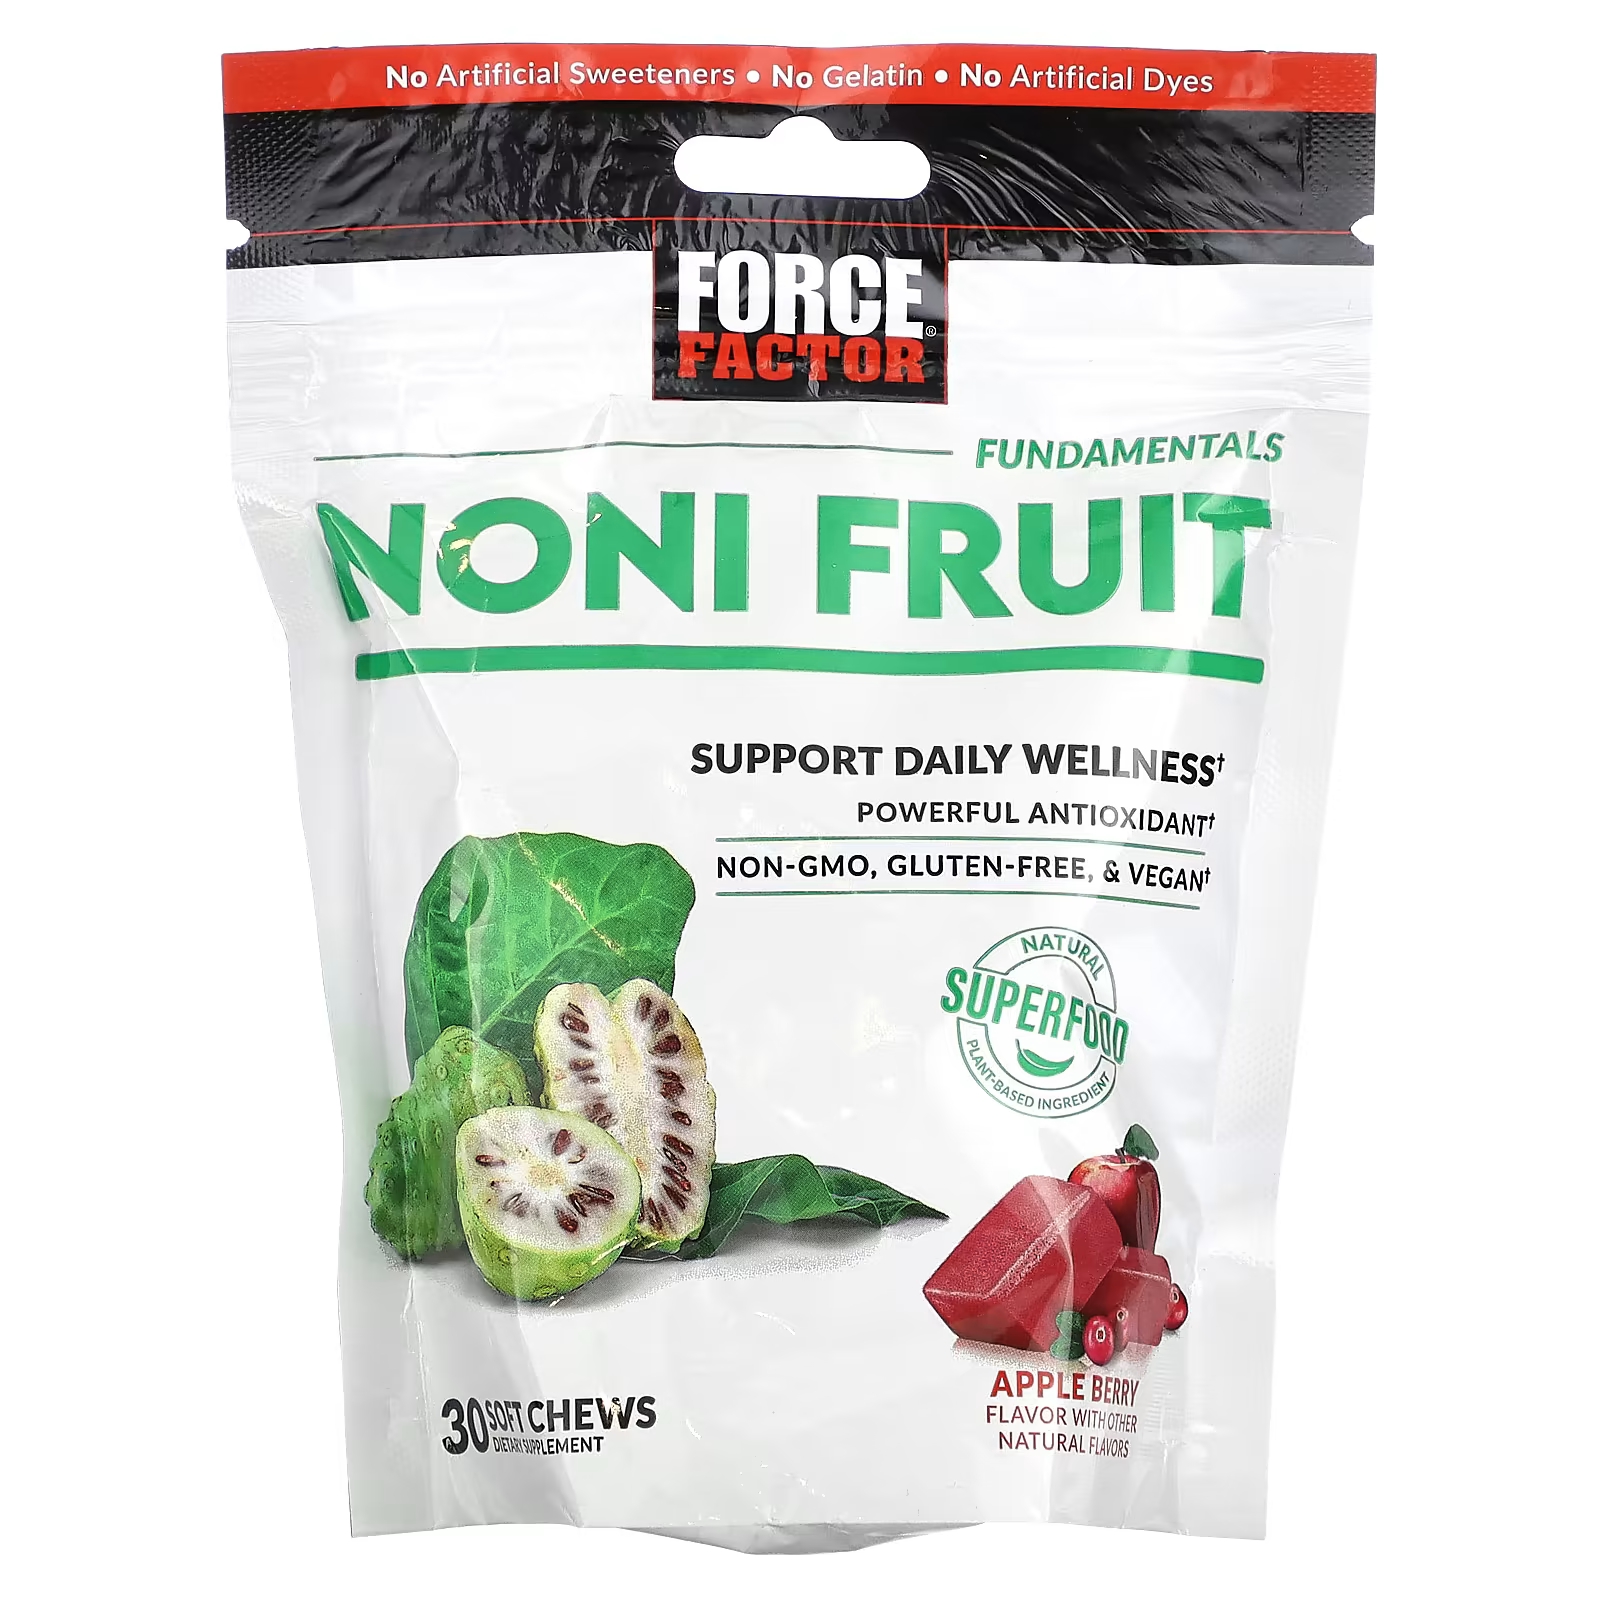 Force Factor Fundamentals Noni Fruit Apple Berry 30 мягких жевательных конфет neocell biotin bursts бразильские ягоды асаи 30 мягких жевательных конфет